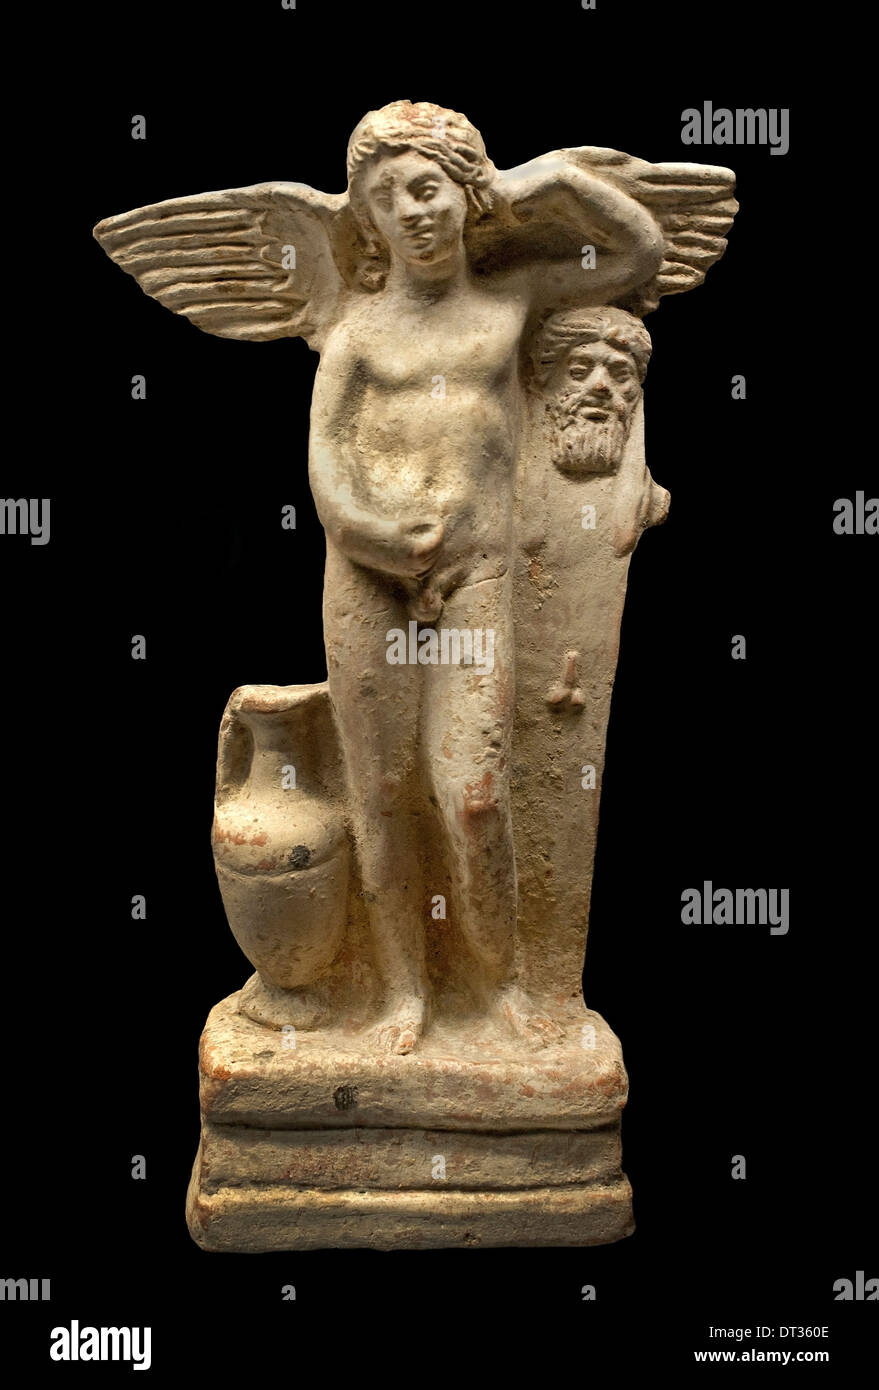 La belle athlète (Eros pris en charge sur un pilier Hermes et exploite des soins du corps) 100BC - AD 100 Grèce Grec Banque D'Images